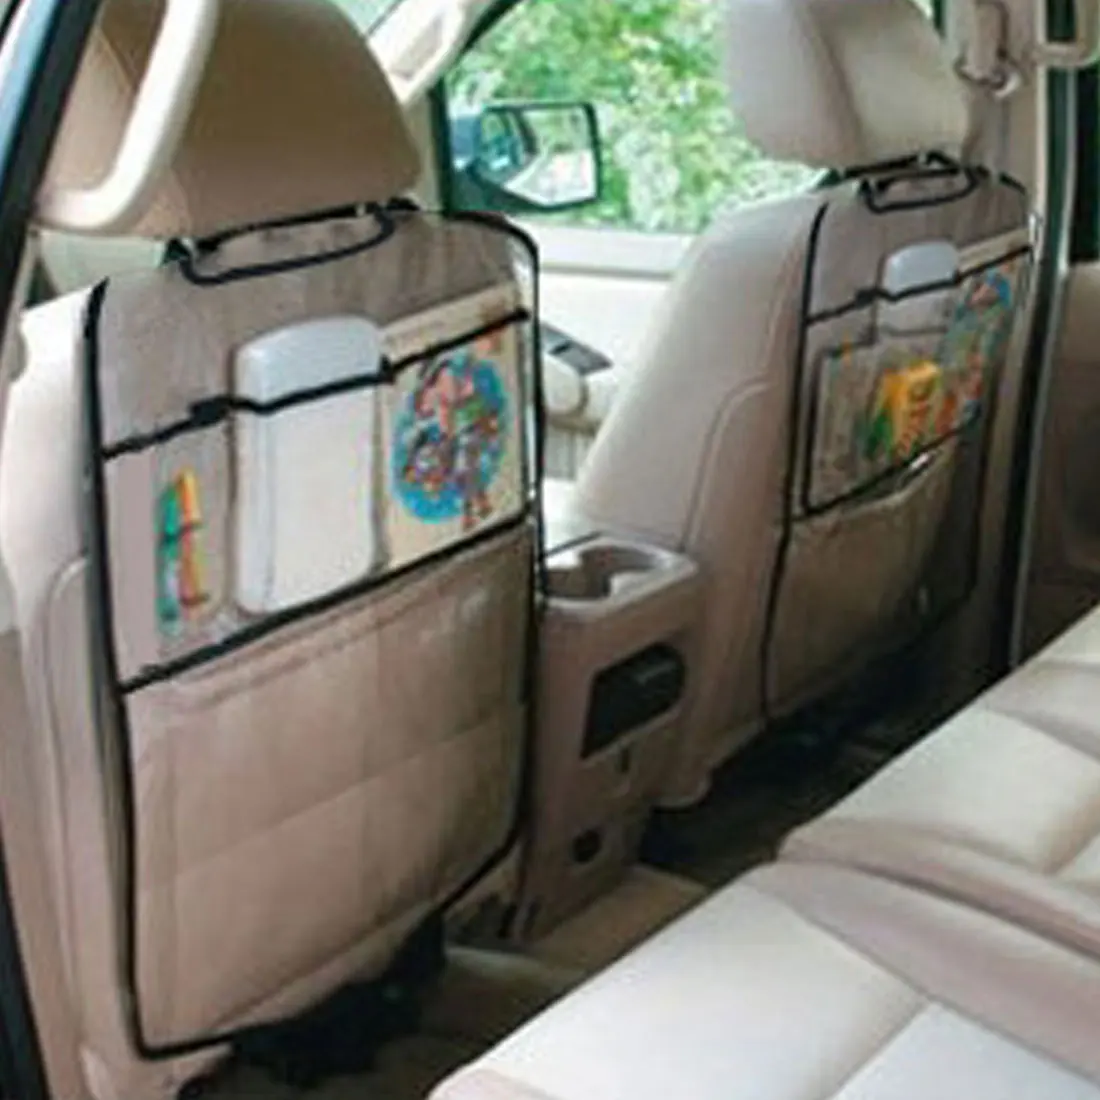 Dewtreetali уплотненный чехол для сиденья автомобиля на заднее сиденье протектор анти-удар коврик для детей детские сиденья с органайзером для Ipad напиток 1 шт